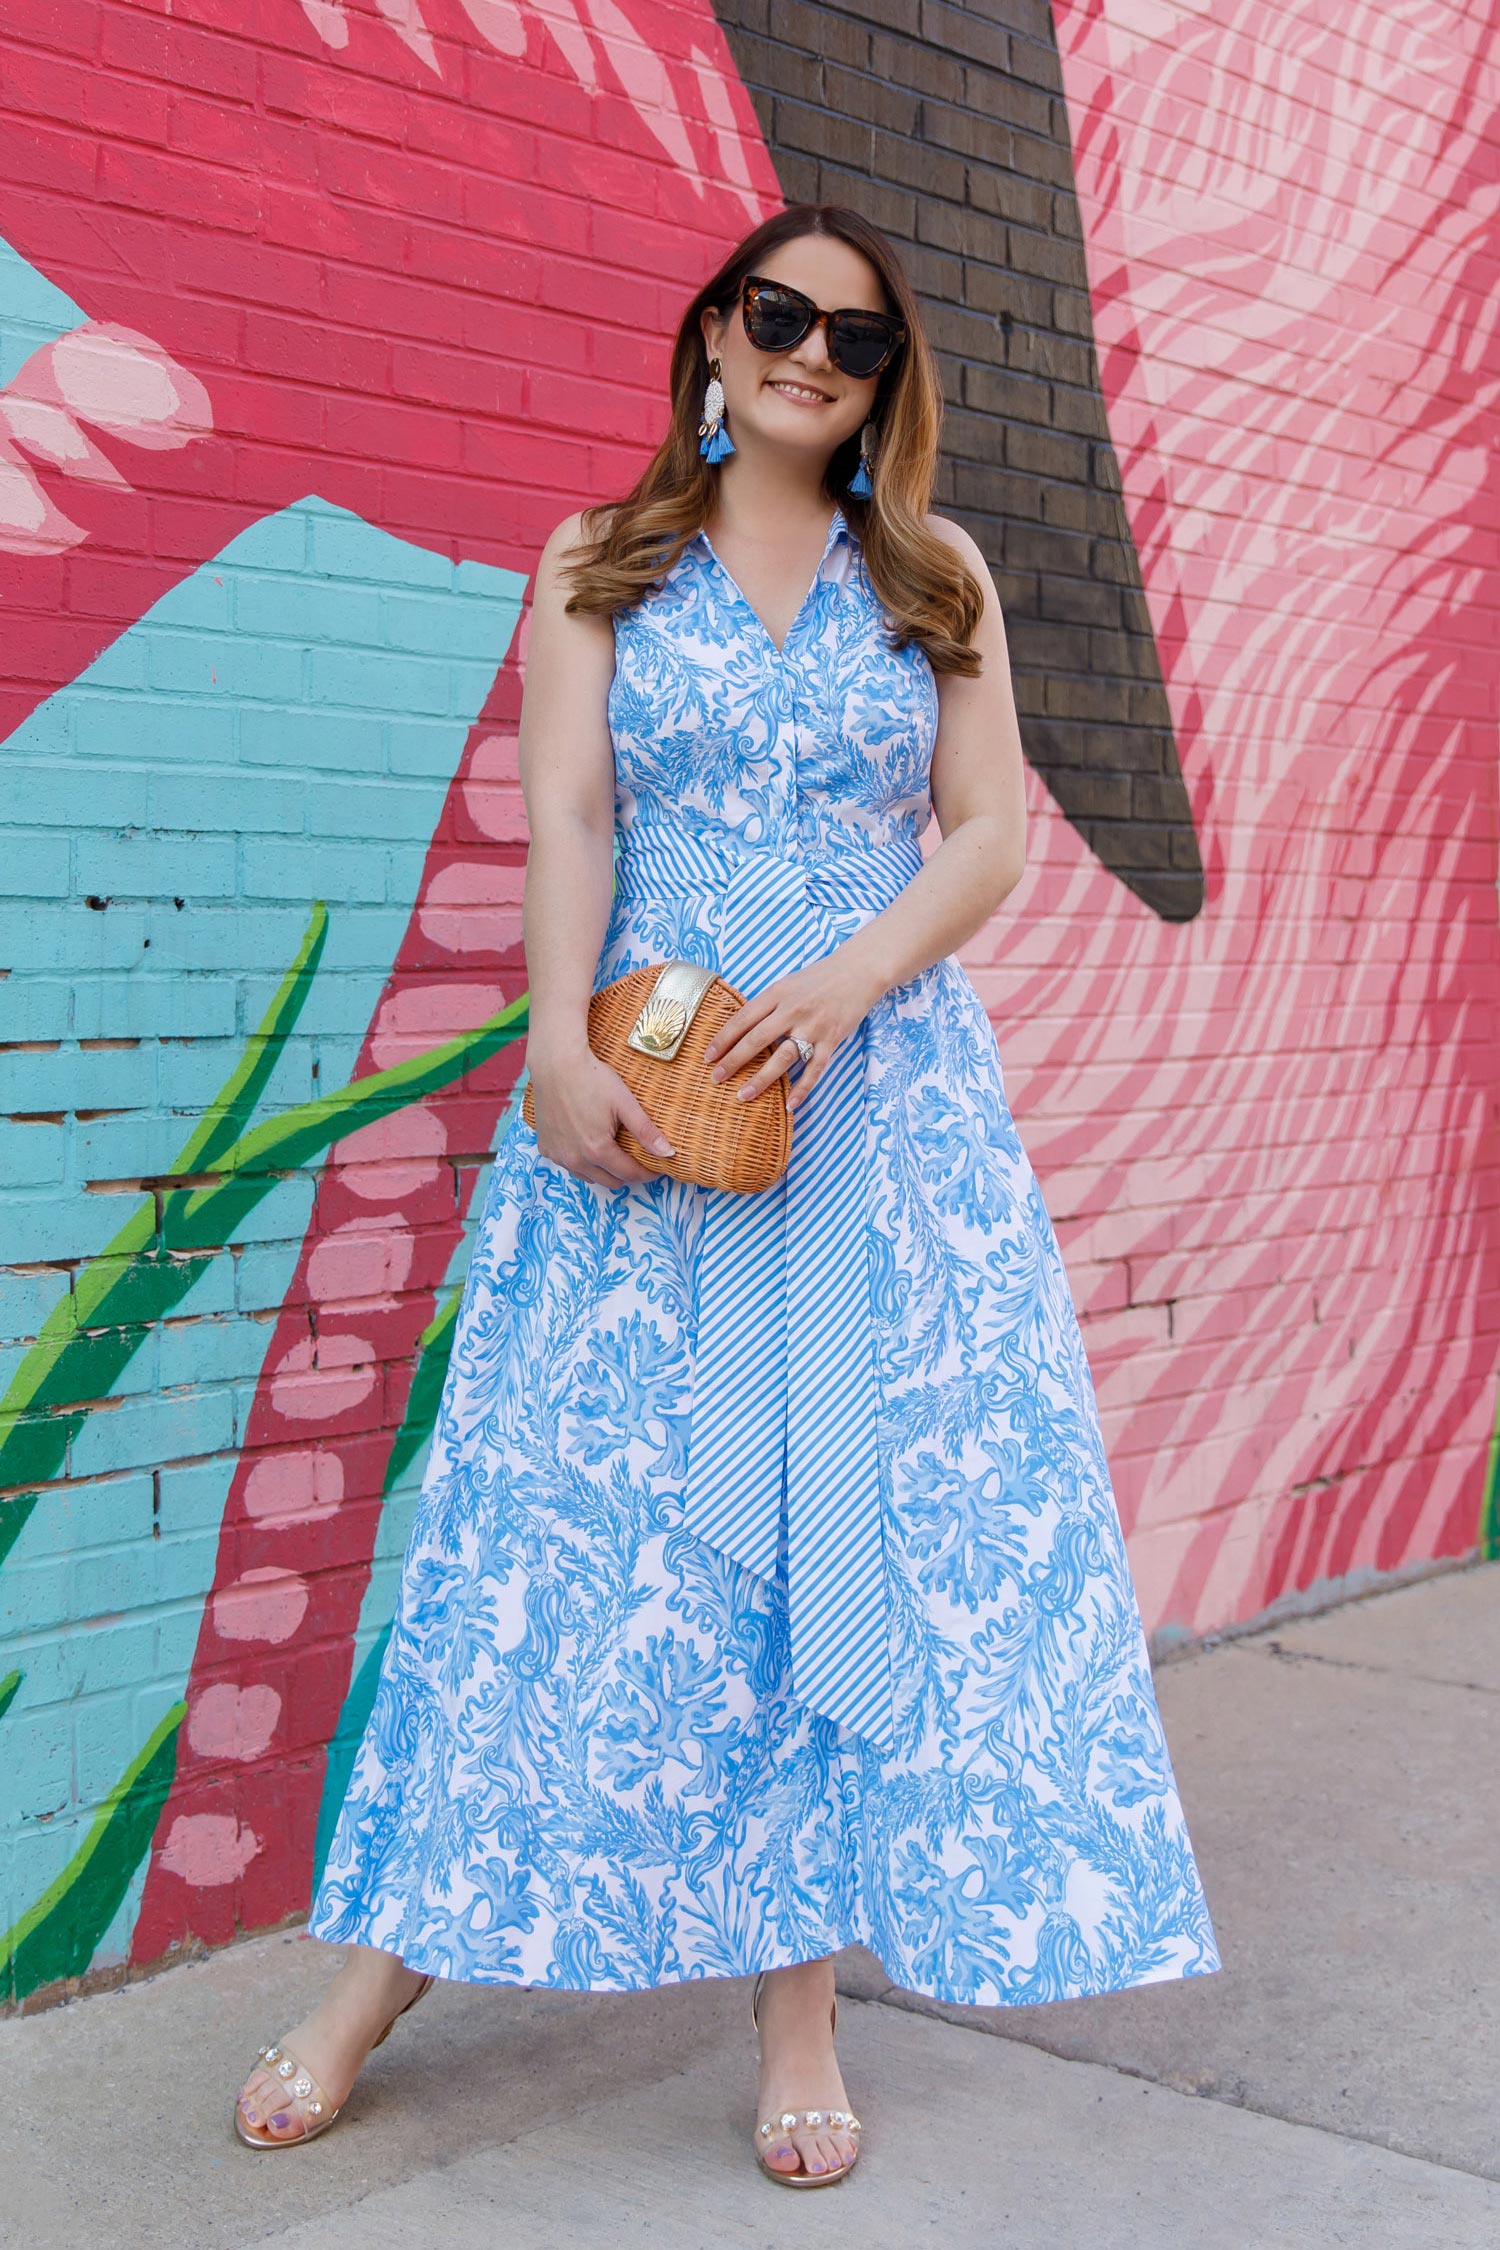 Jennifer Lake Lilly Pulitzer Blue Midi Dress